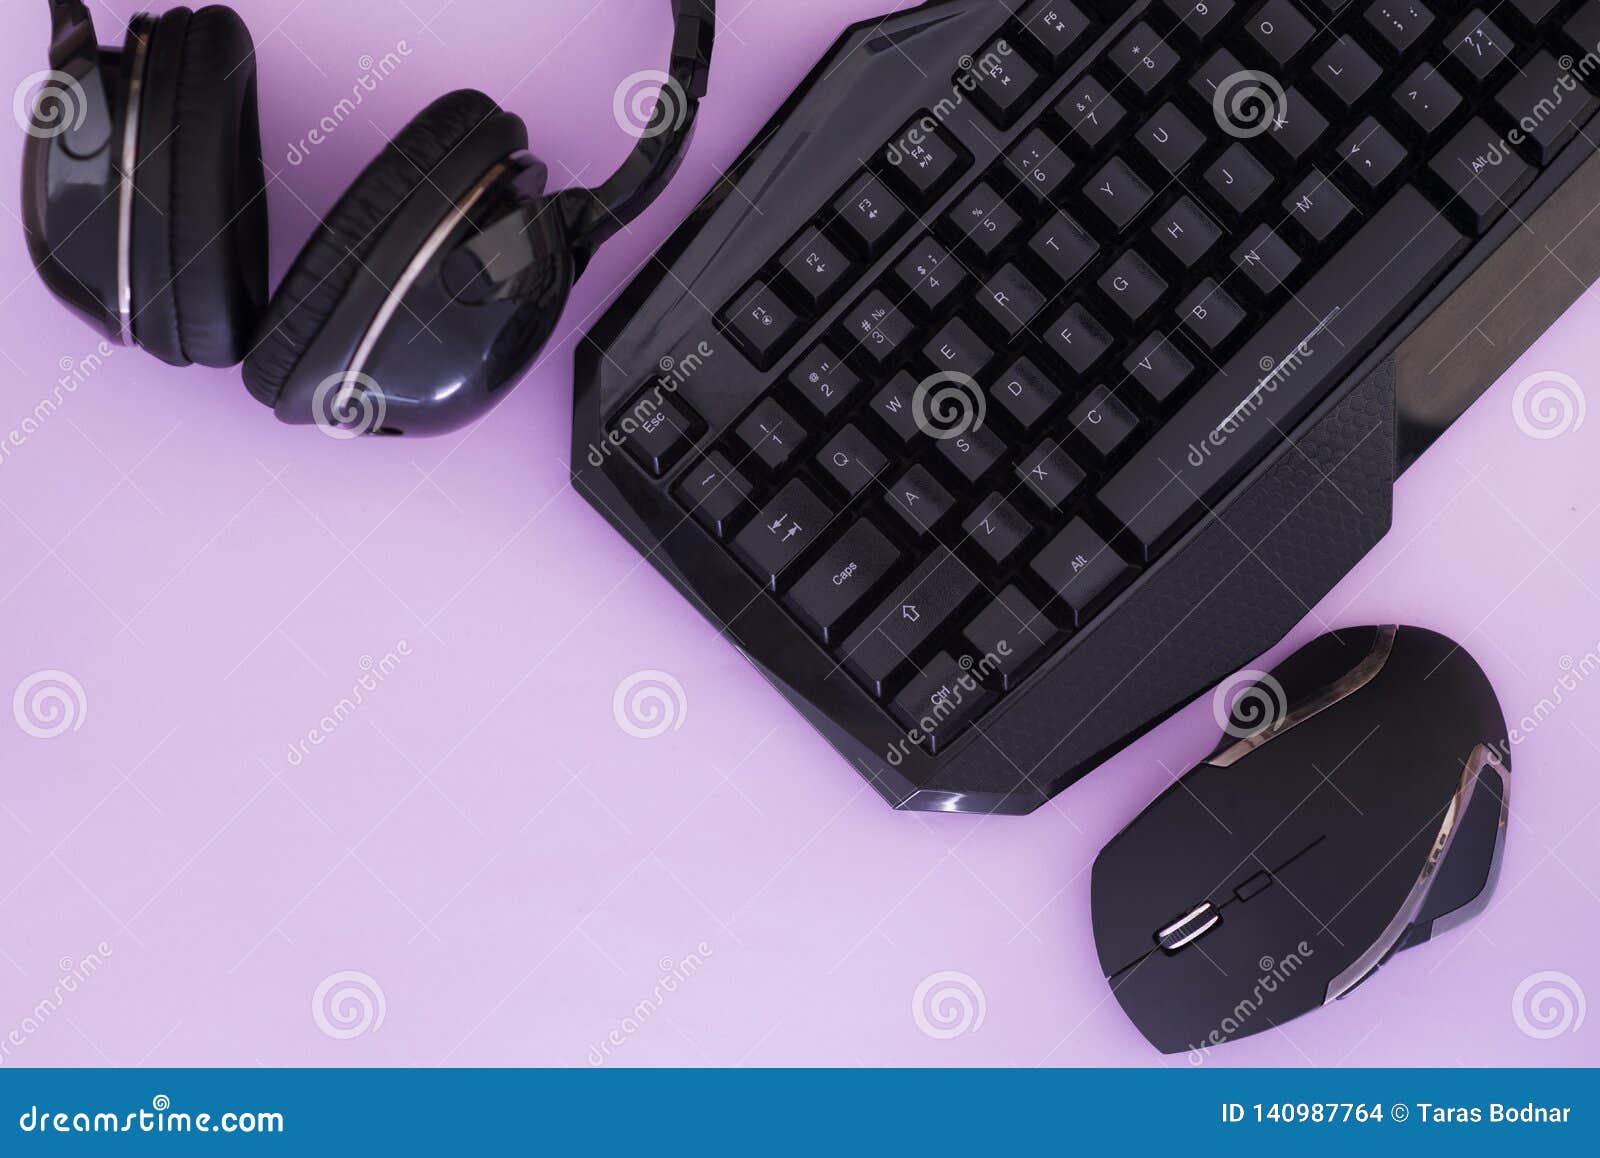 Dois gamepads retrô e teclado de pc antigo em fundo vermelho. jogos,  competição de videogame. vista do topo